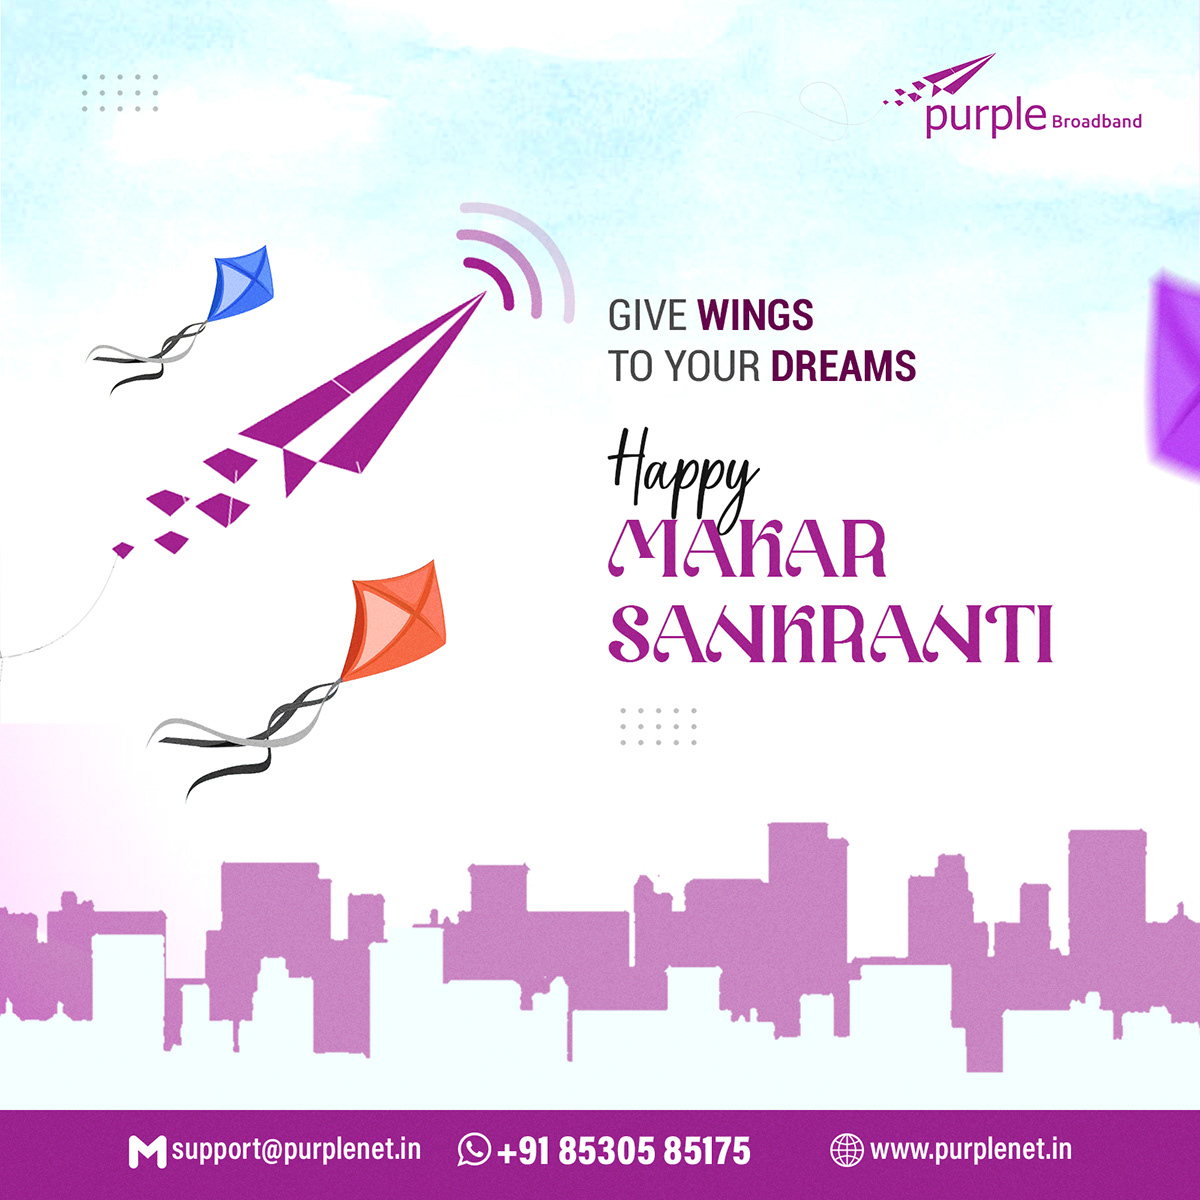 Makarsankranti Pongal festival music Kite kites Flying UTTRAYAN makarsankranticelebration SKY